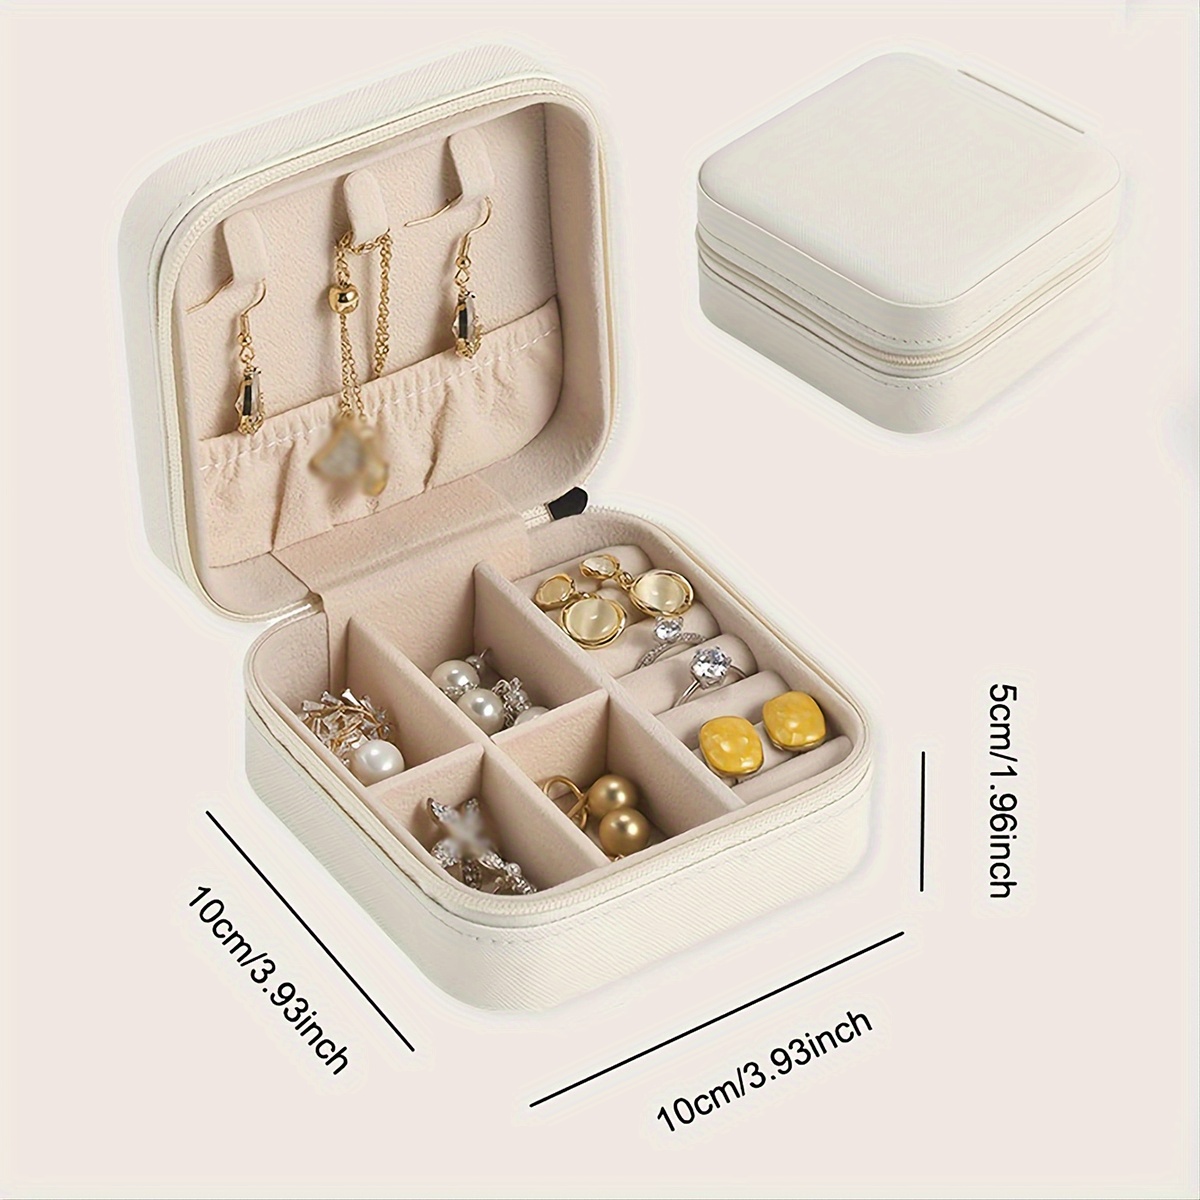 KOLODOGO Jewelry Organizer Case Jewelry Travel Storage Boxes